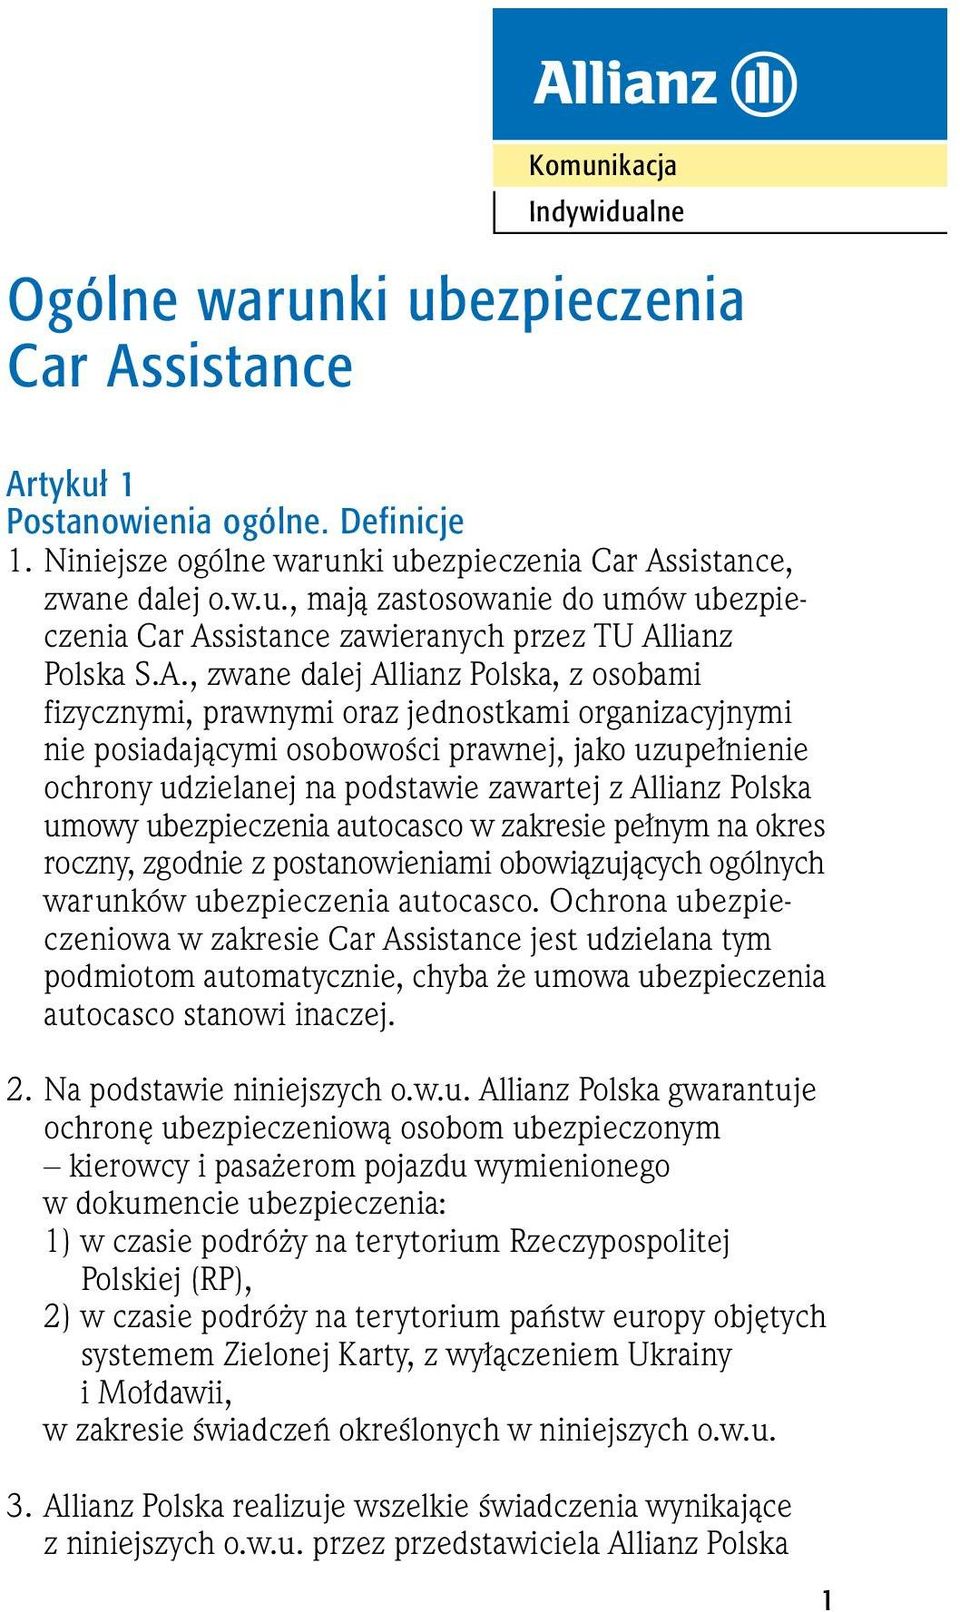 Allianz Polska umowy ubezpieczenia autocasco w zakresie pe nym na okres roczny, zgodnie z postanowieniami obowiàzujàcych ogólnych warunków ubezpieczenia autocasco.